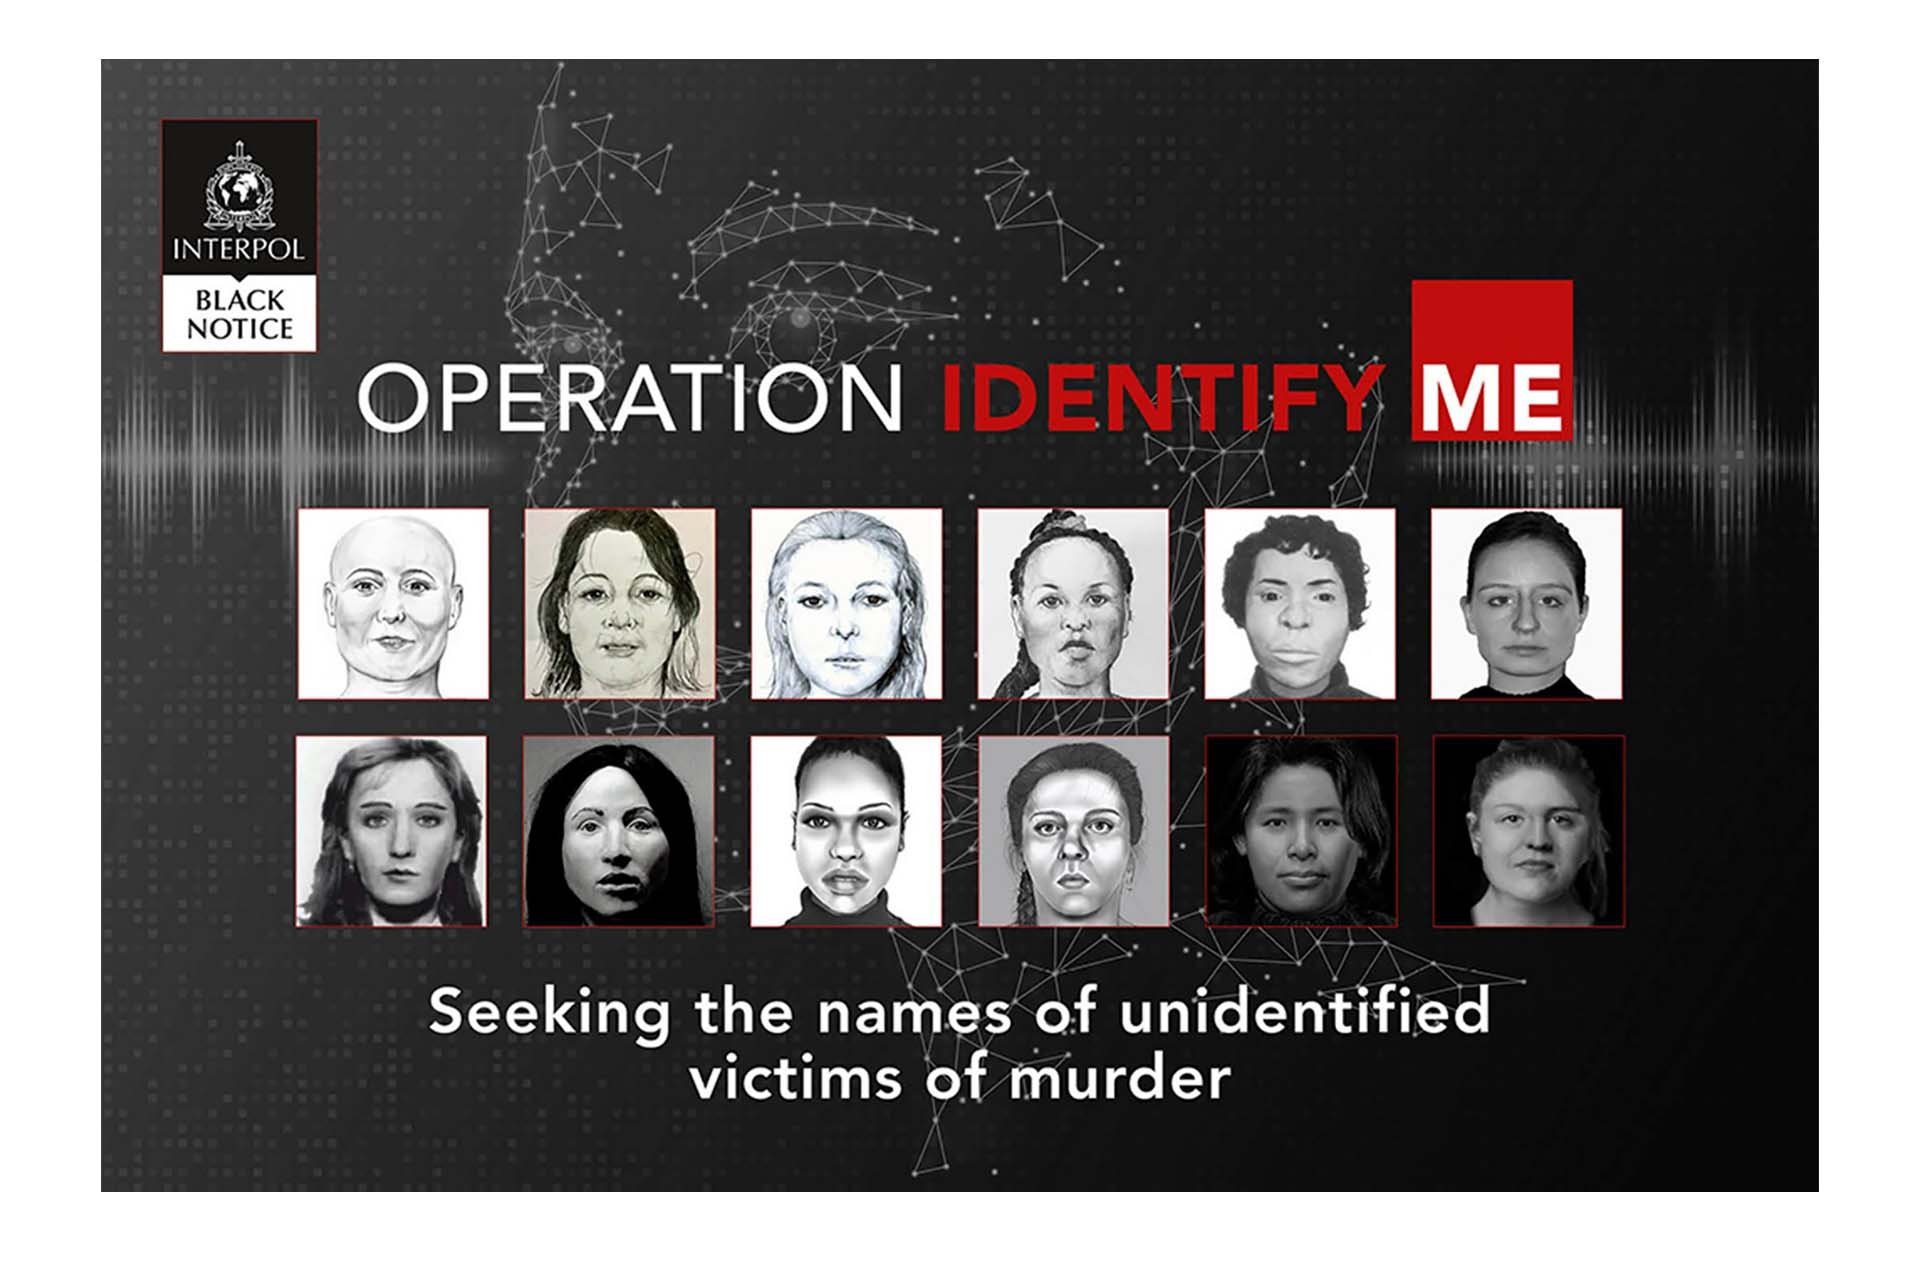 “Operación Identifíqueme”: la campaña de Interpol para tratar de resolver 22 femicidios en Europa